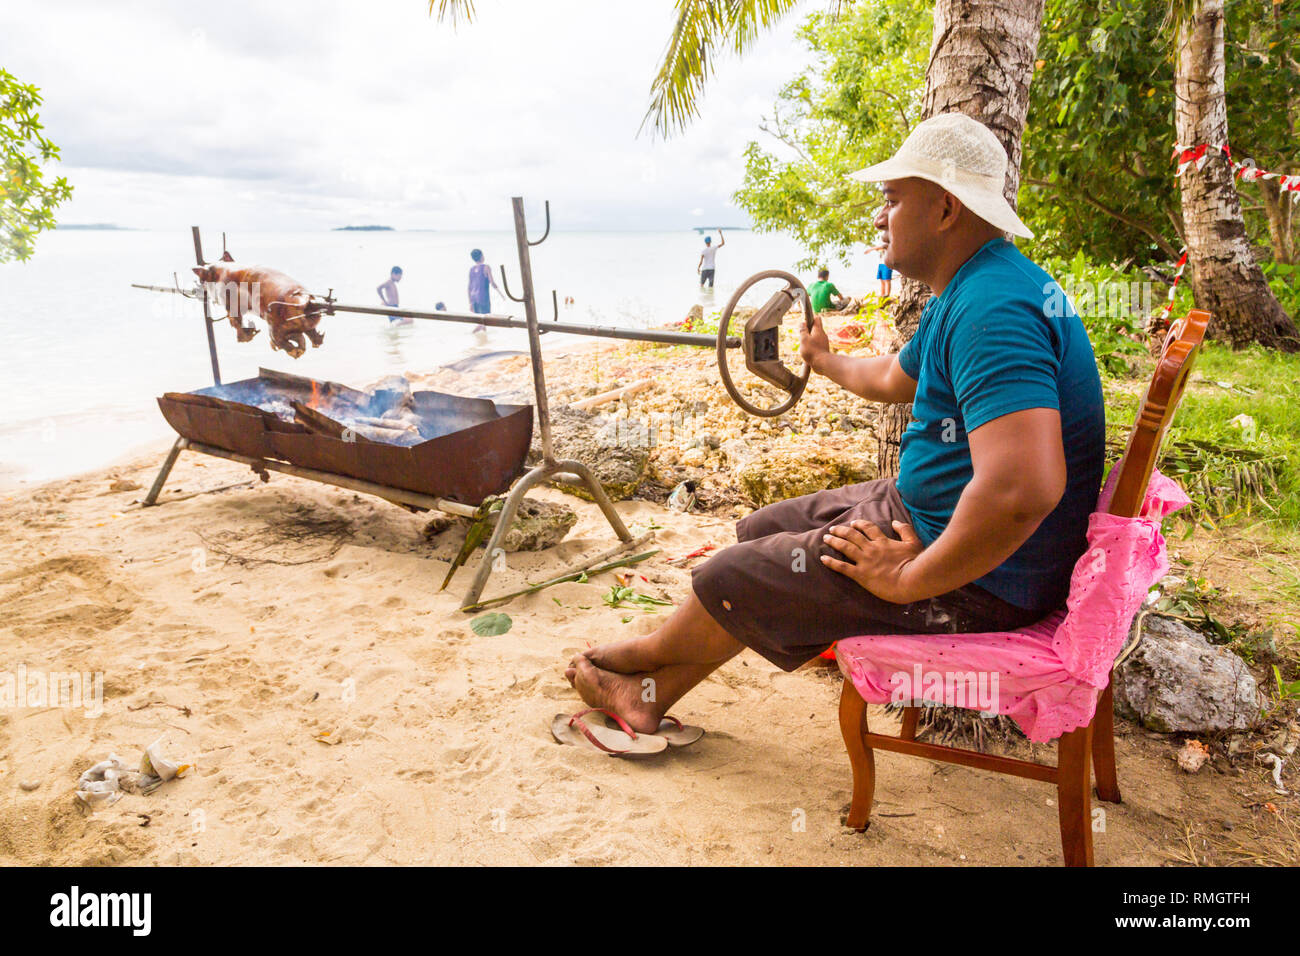 L'île de Tongatapu (Tonga) - 10/01/2014 : un homme autochtone autochtone locale n'porc polynésien un barbecue d'un petit porcelet sur un feu ouvert d'une grill m Banque D'Images